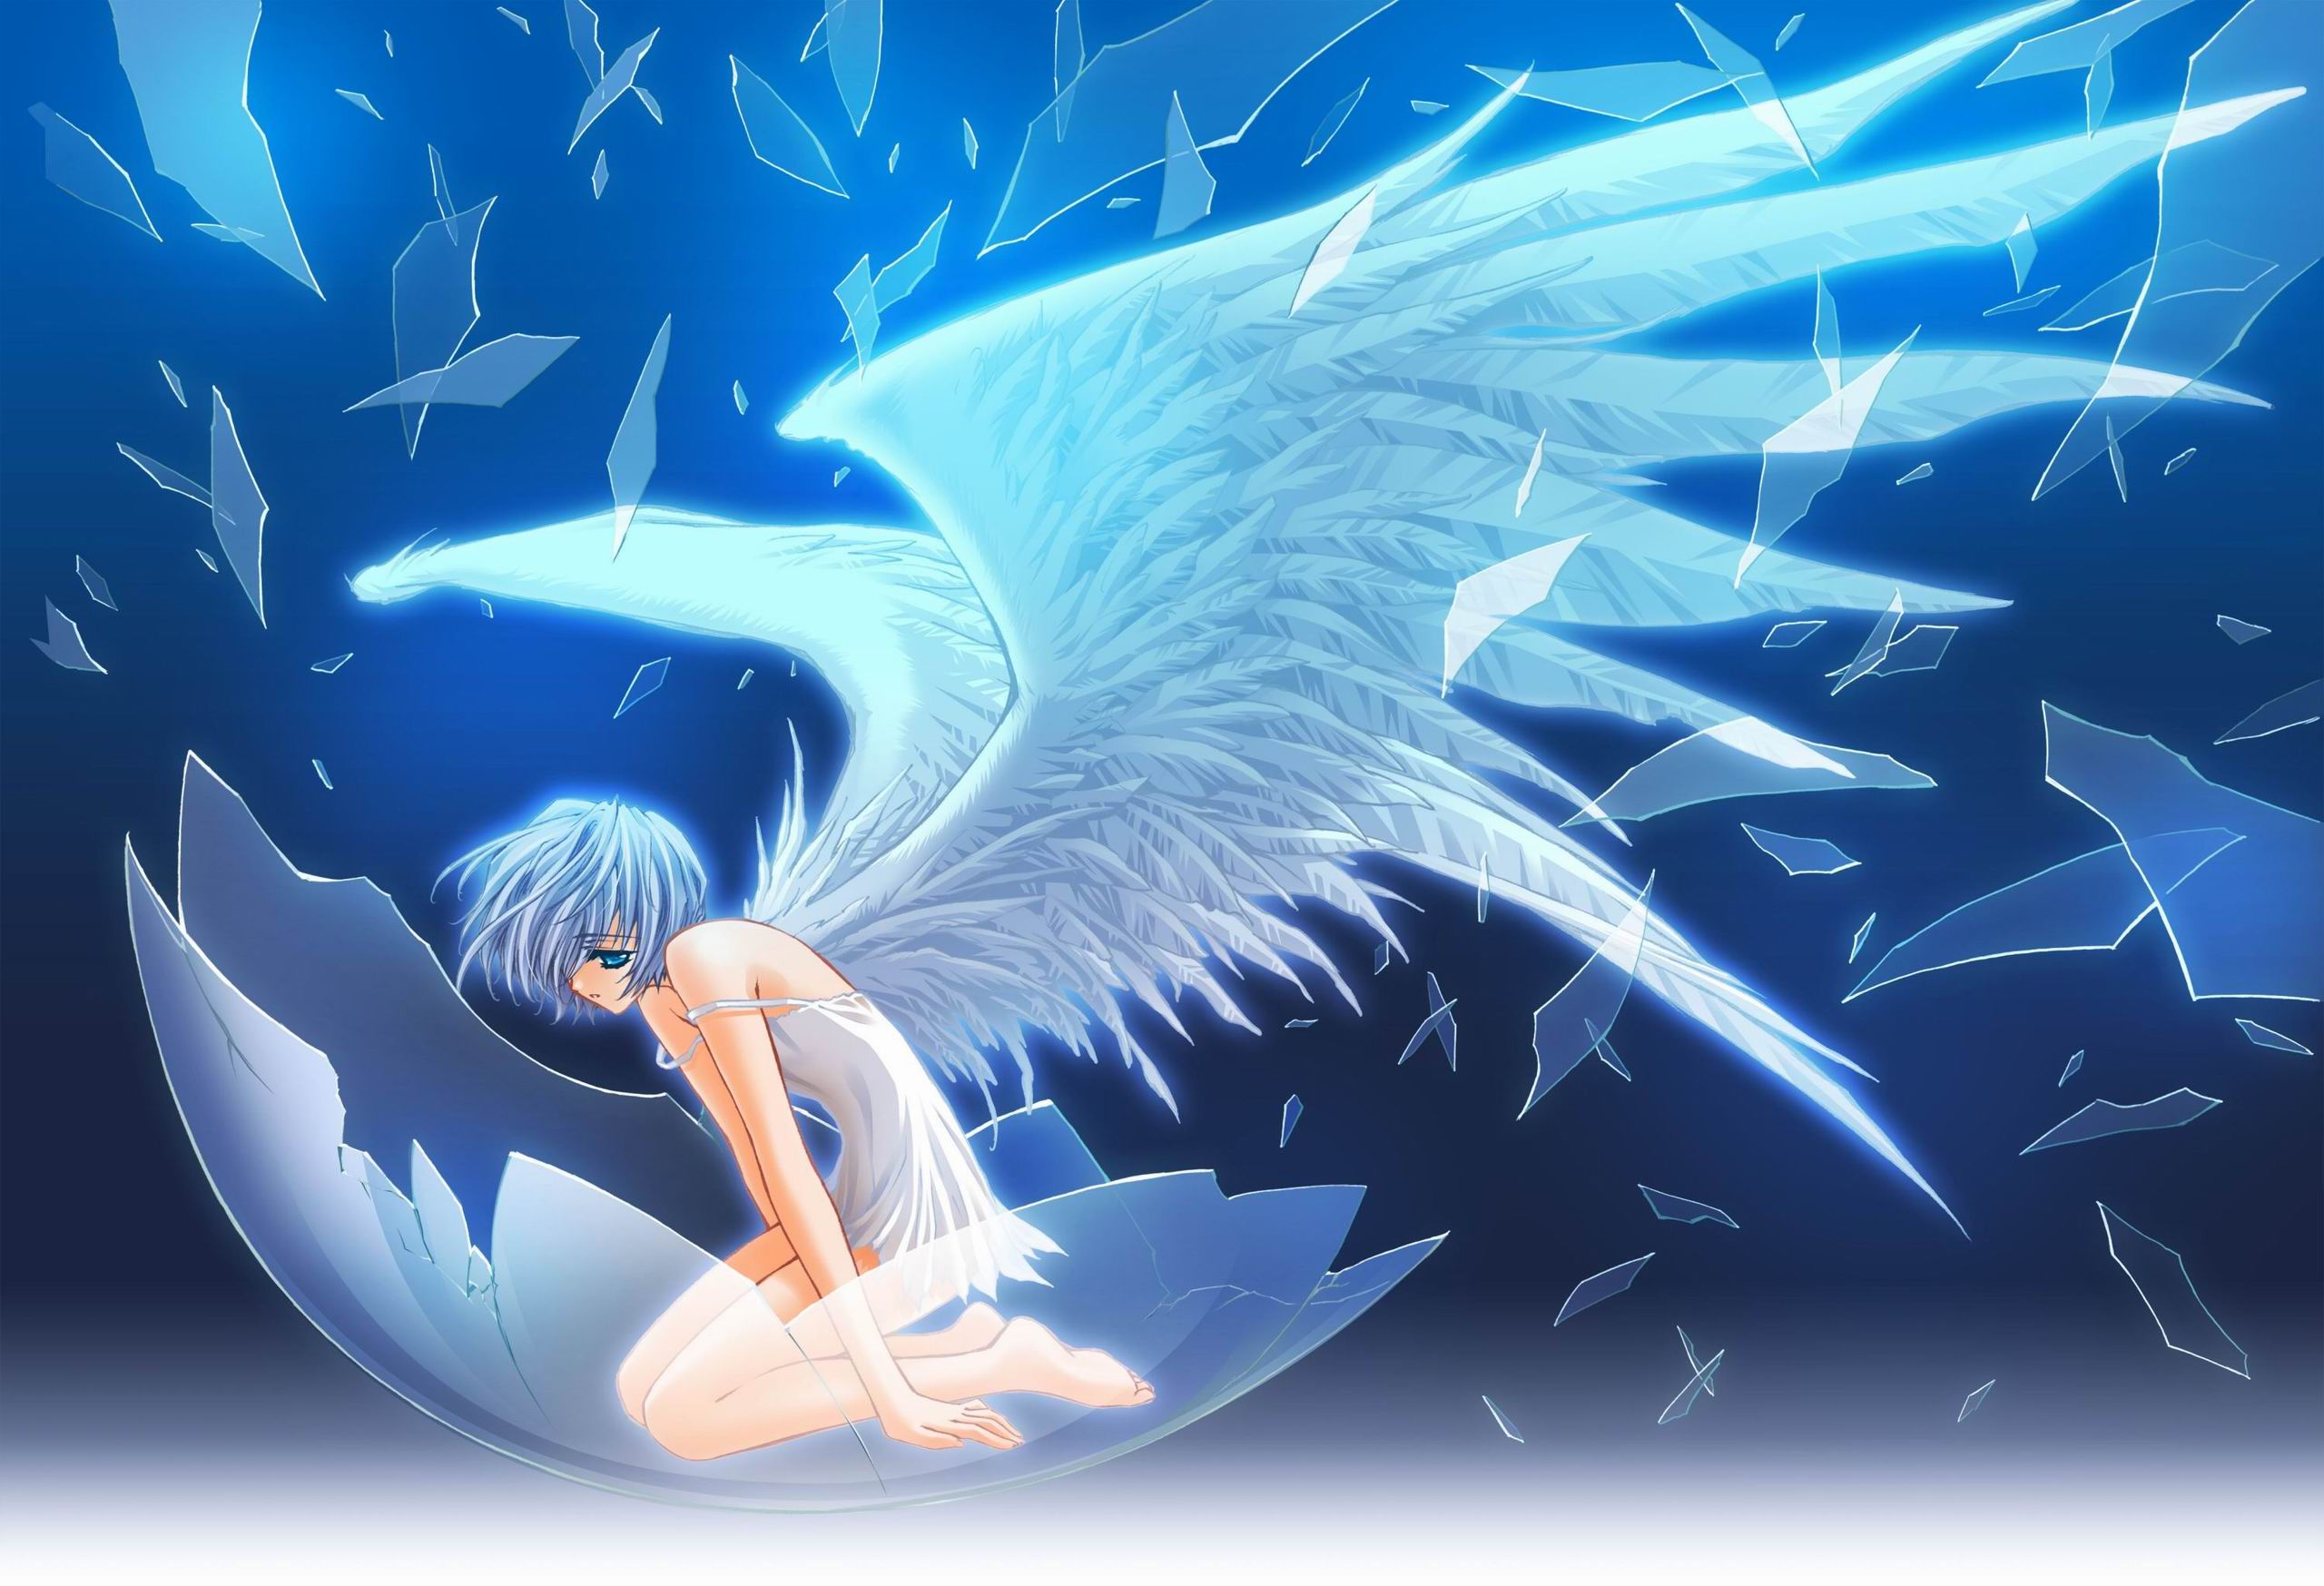 壁纸 : WLOP, 天使, 雪, 动漫女孩, 翅膀, 幻想艺术 4334x2811 - erhuoy - 1526517 - 电脑桌面壁纸 - WallHere 壁纸库